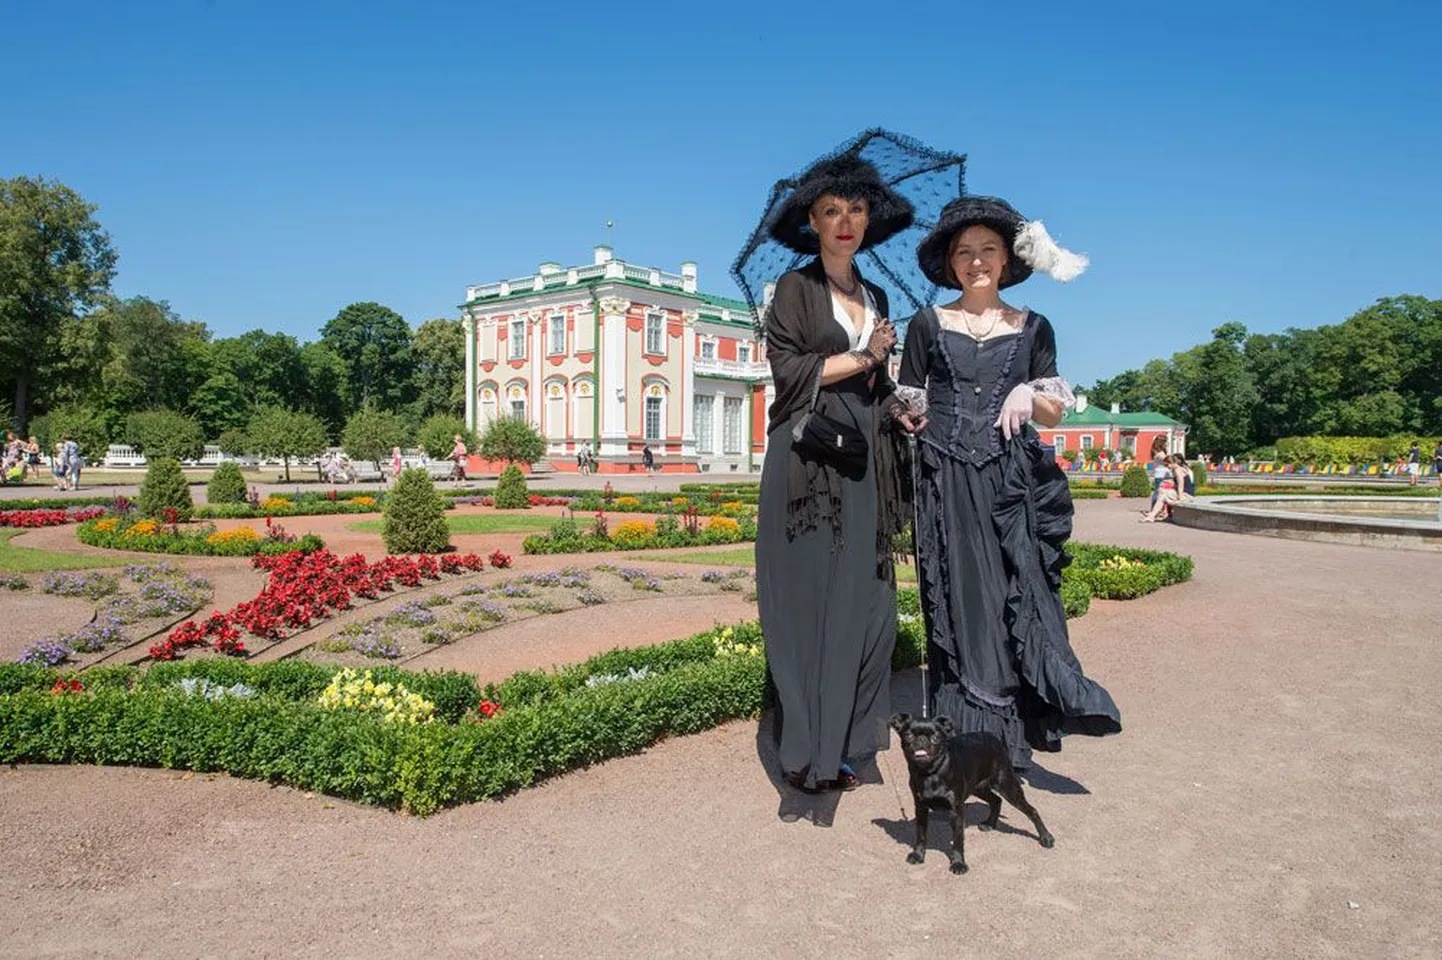 Работники Кадриоргского музея, встречавшие гостей праздника в образе Черной Дамы, казались ожившими силуэтами художницы Эвелине фон Майдель, выставка которой открыта сейчас во дворце.